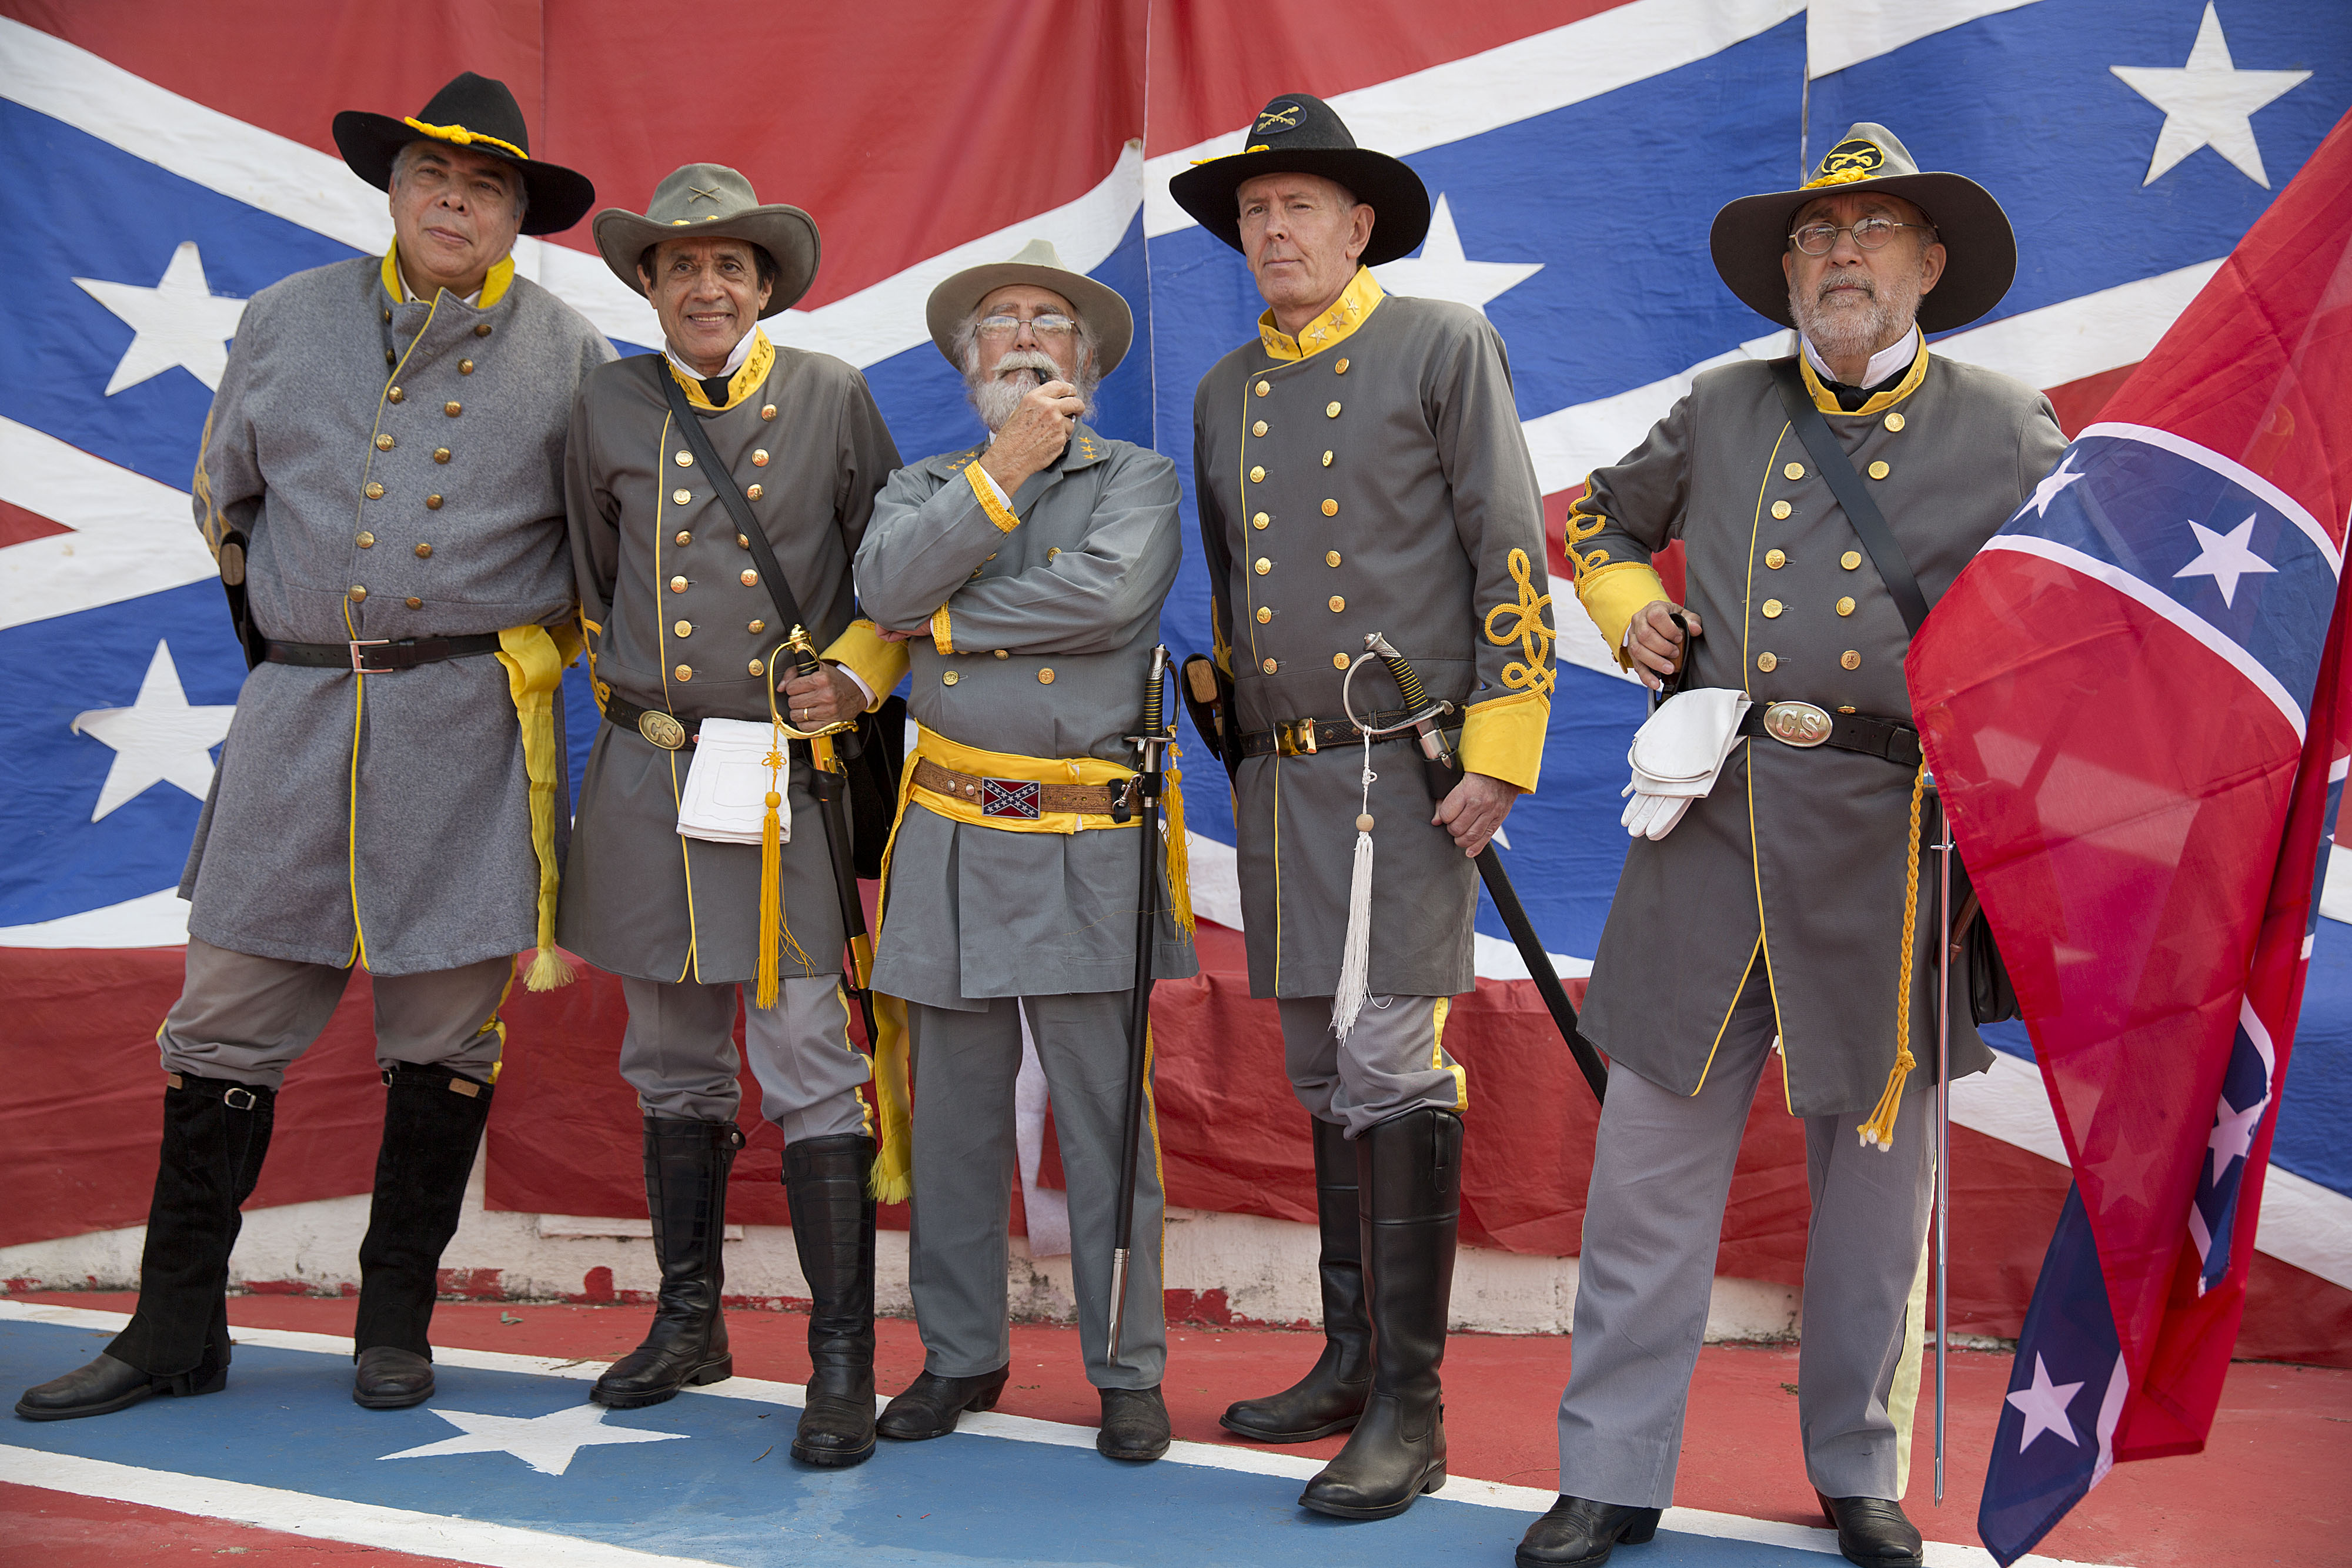 confederate soldiers confederate navy civil war uniforms